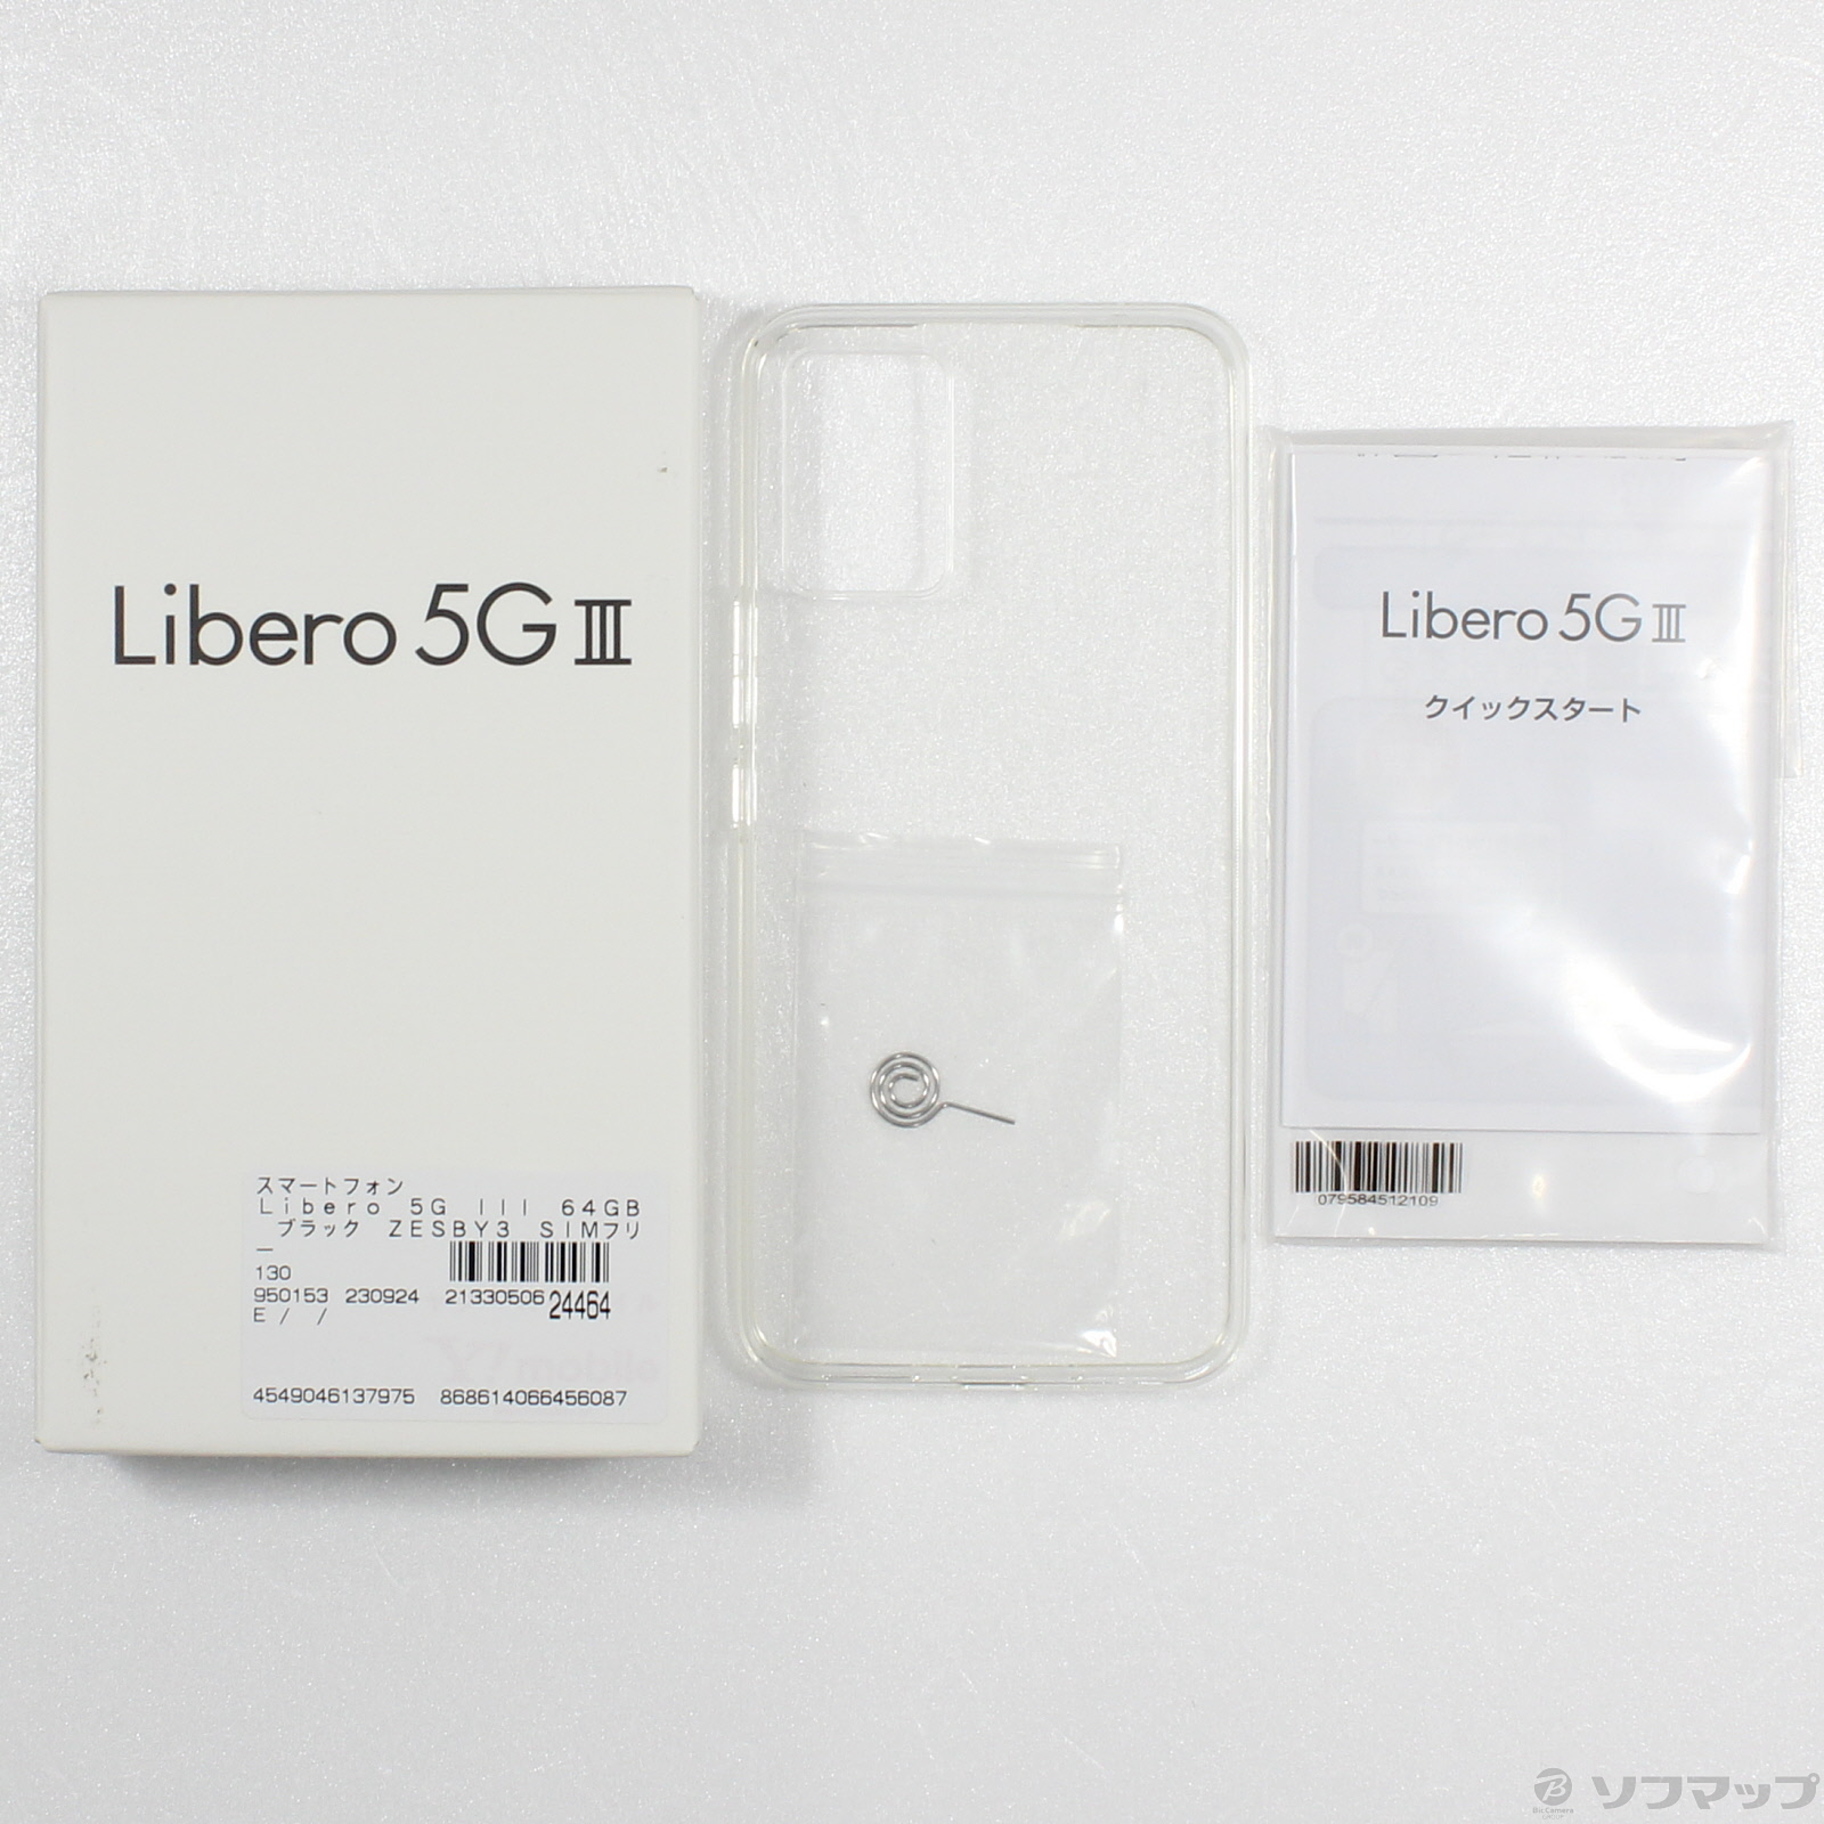 中古】Libero 5G III 64GB ブラック ZESBY3 SIMフリー [2133050624464